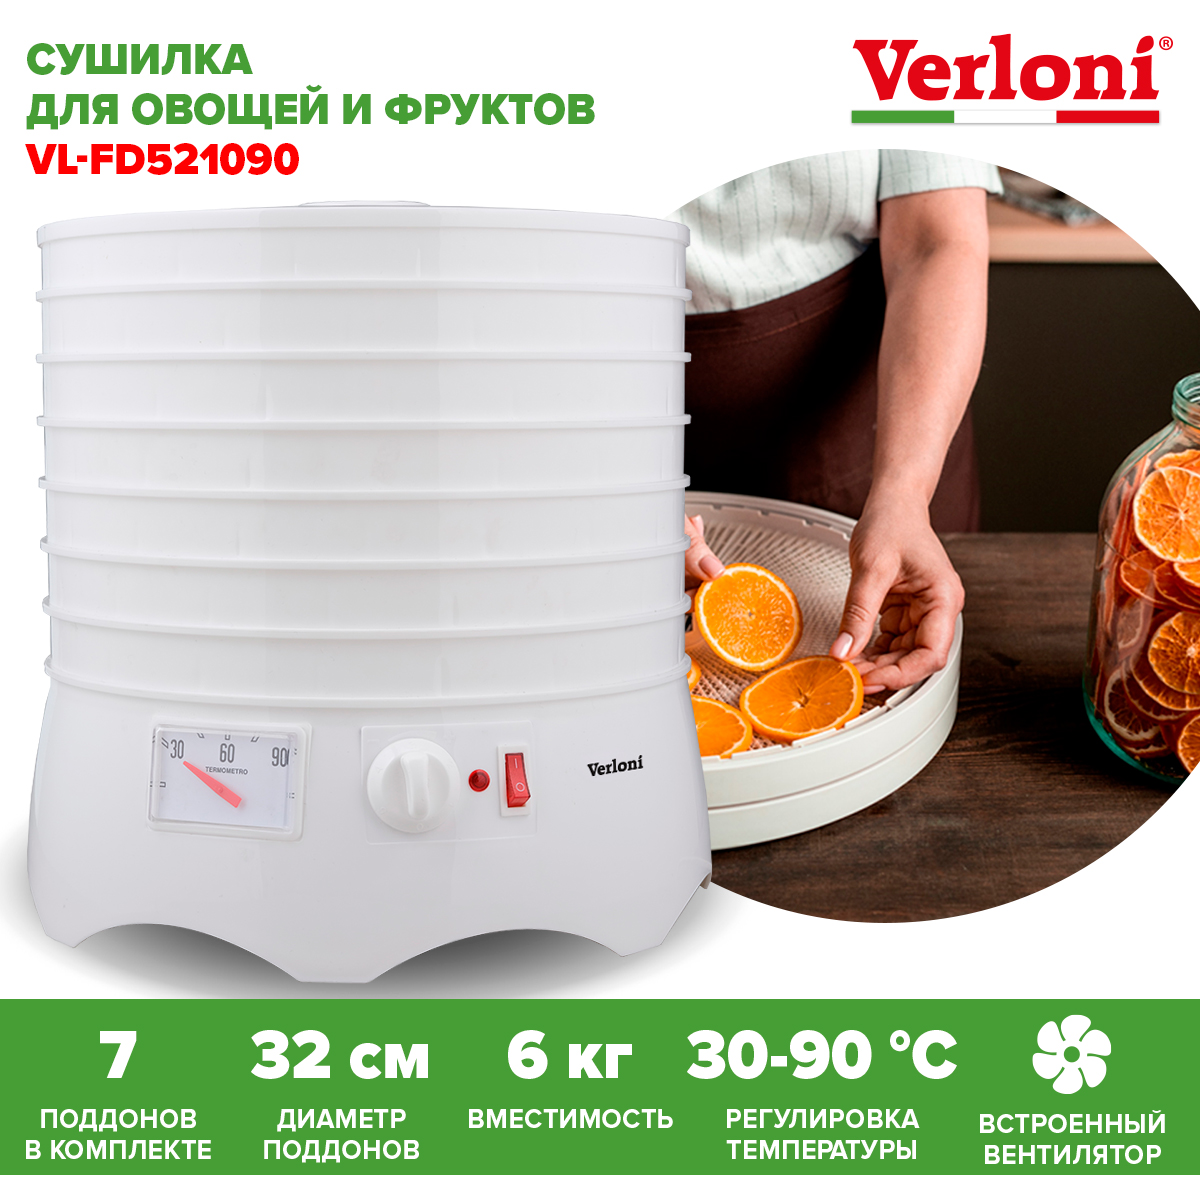 Сушилка для овощей и фруктов Verloni VL-FD521090 белая сушилка для овощей и фруктов red solution rfd 0122 белая